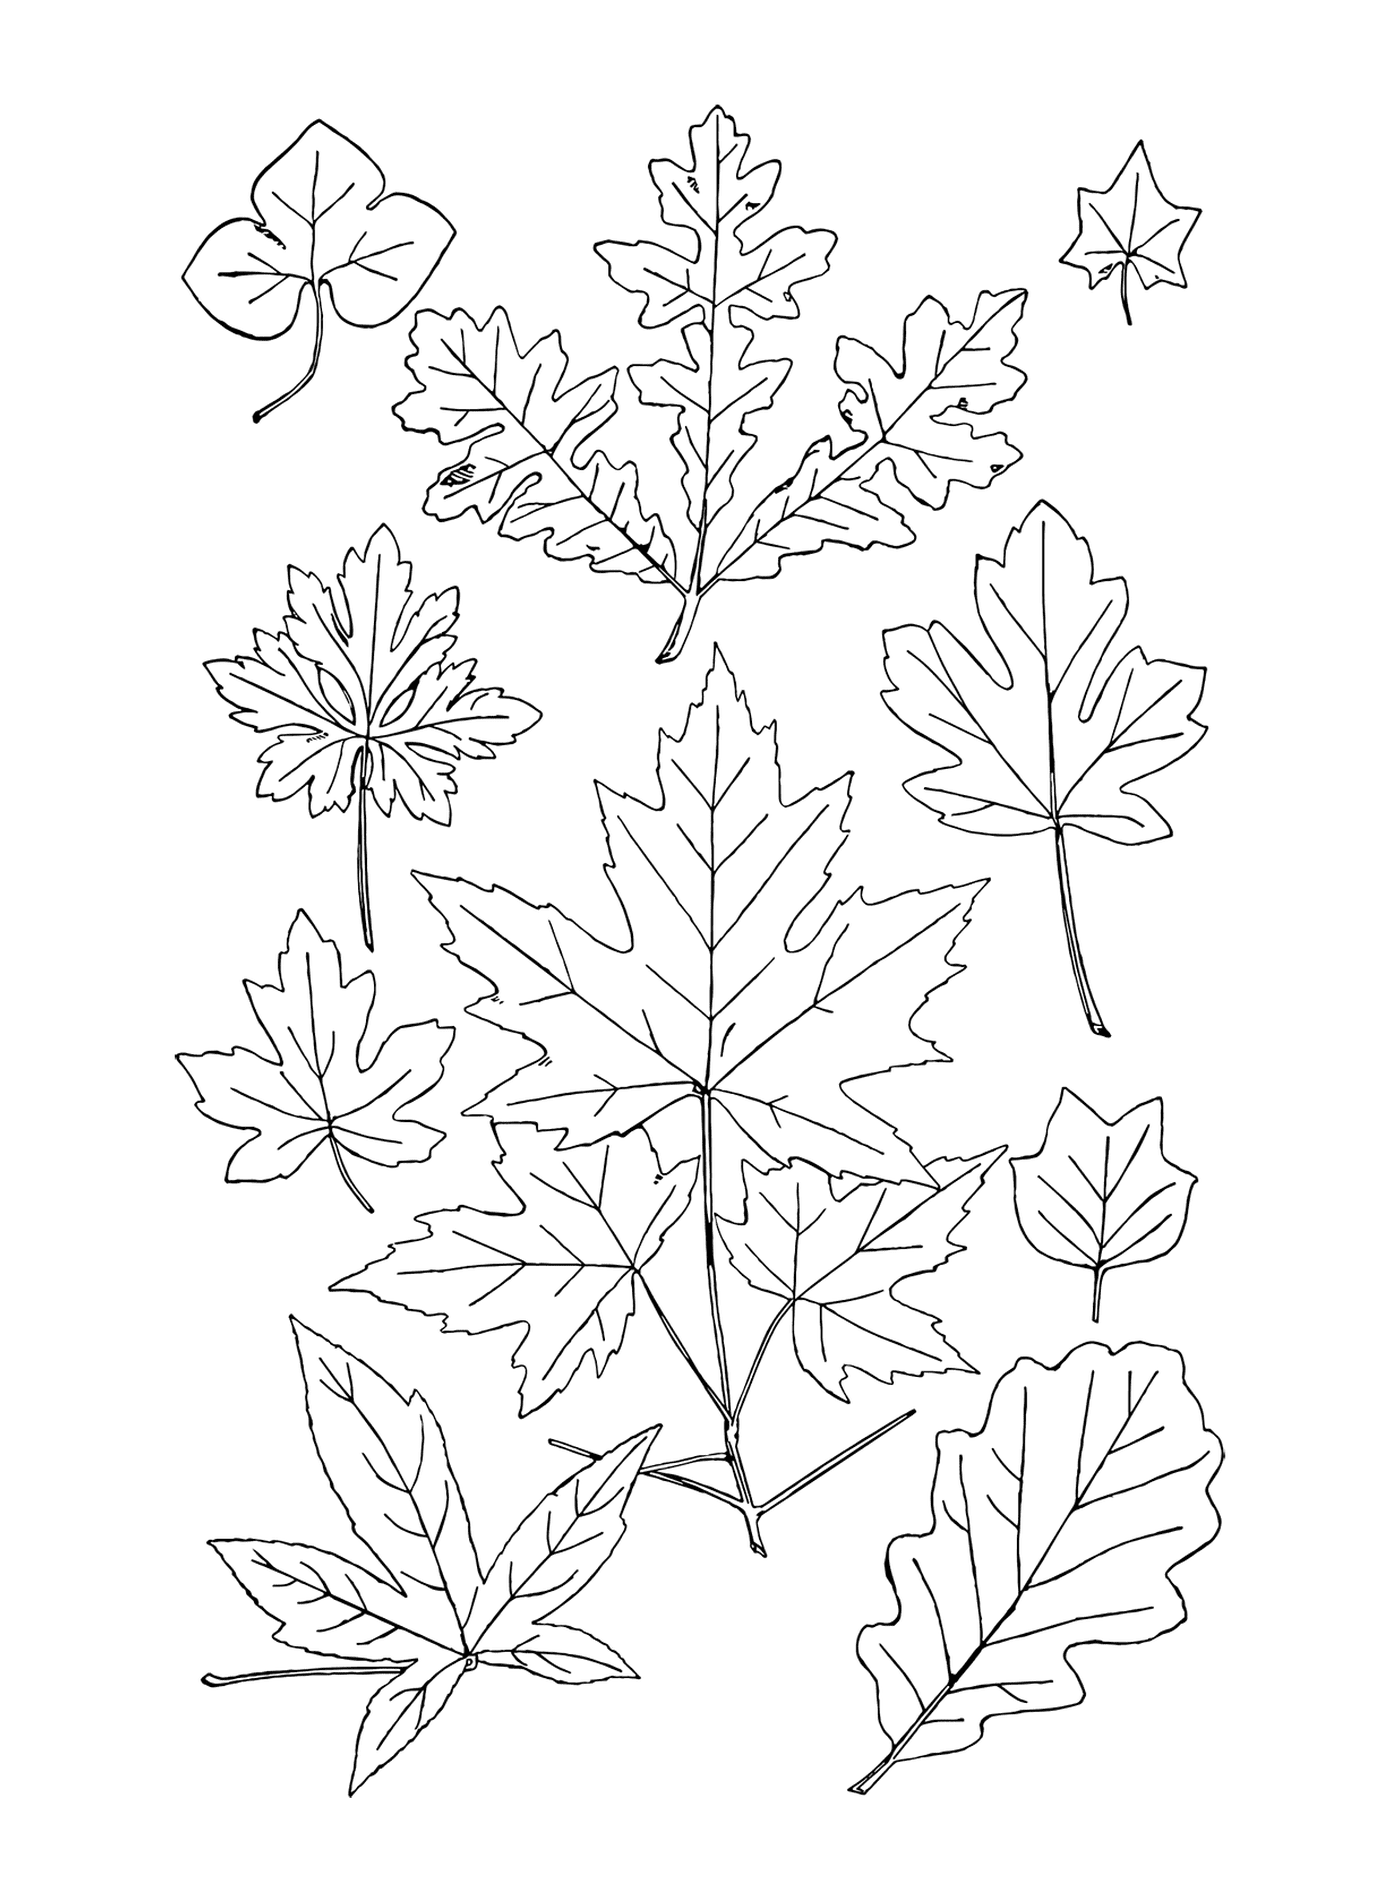  Una línea de hojas 